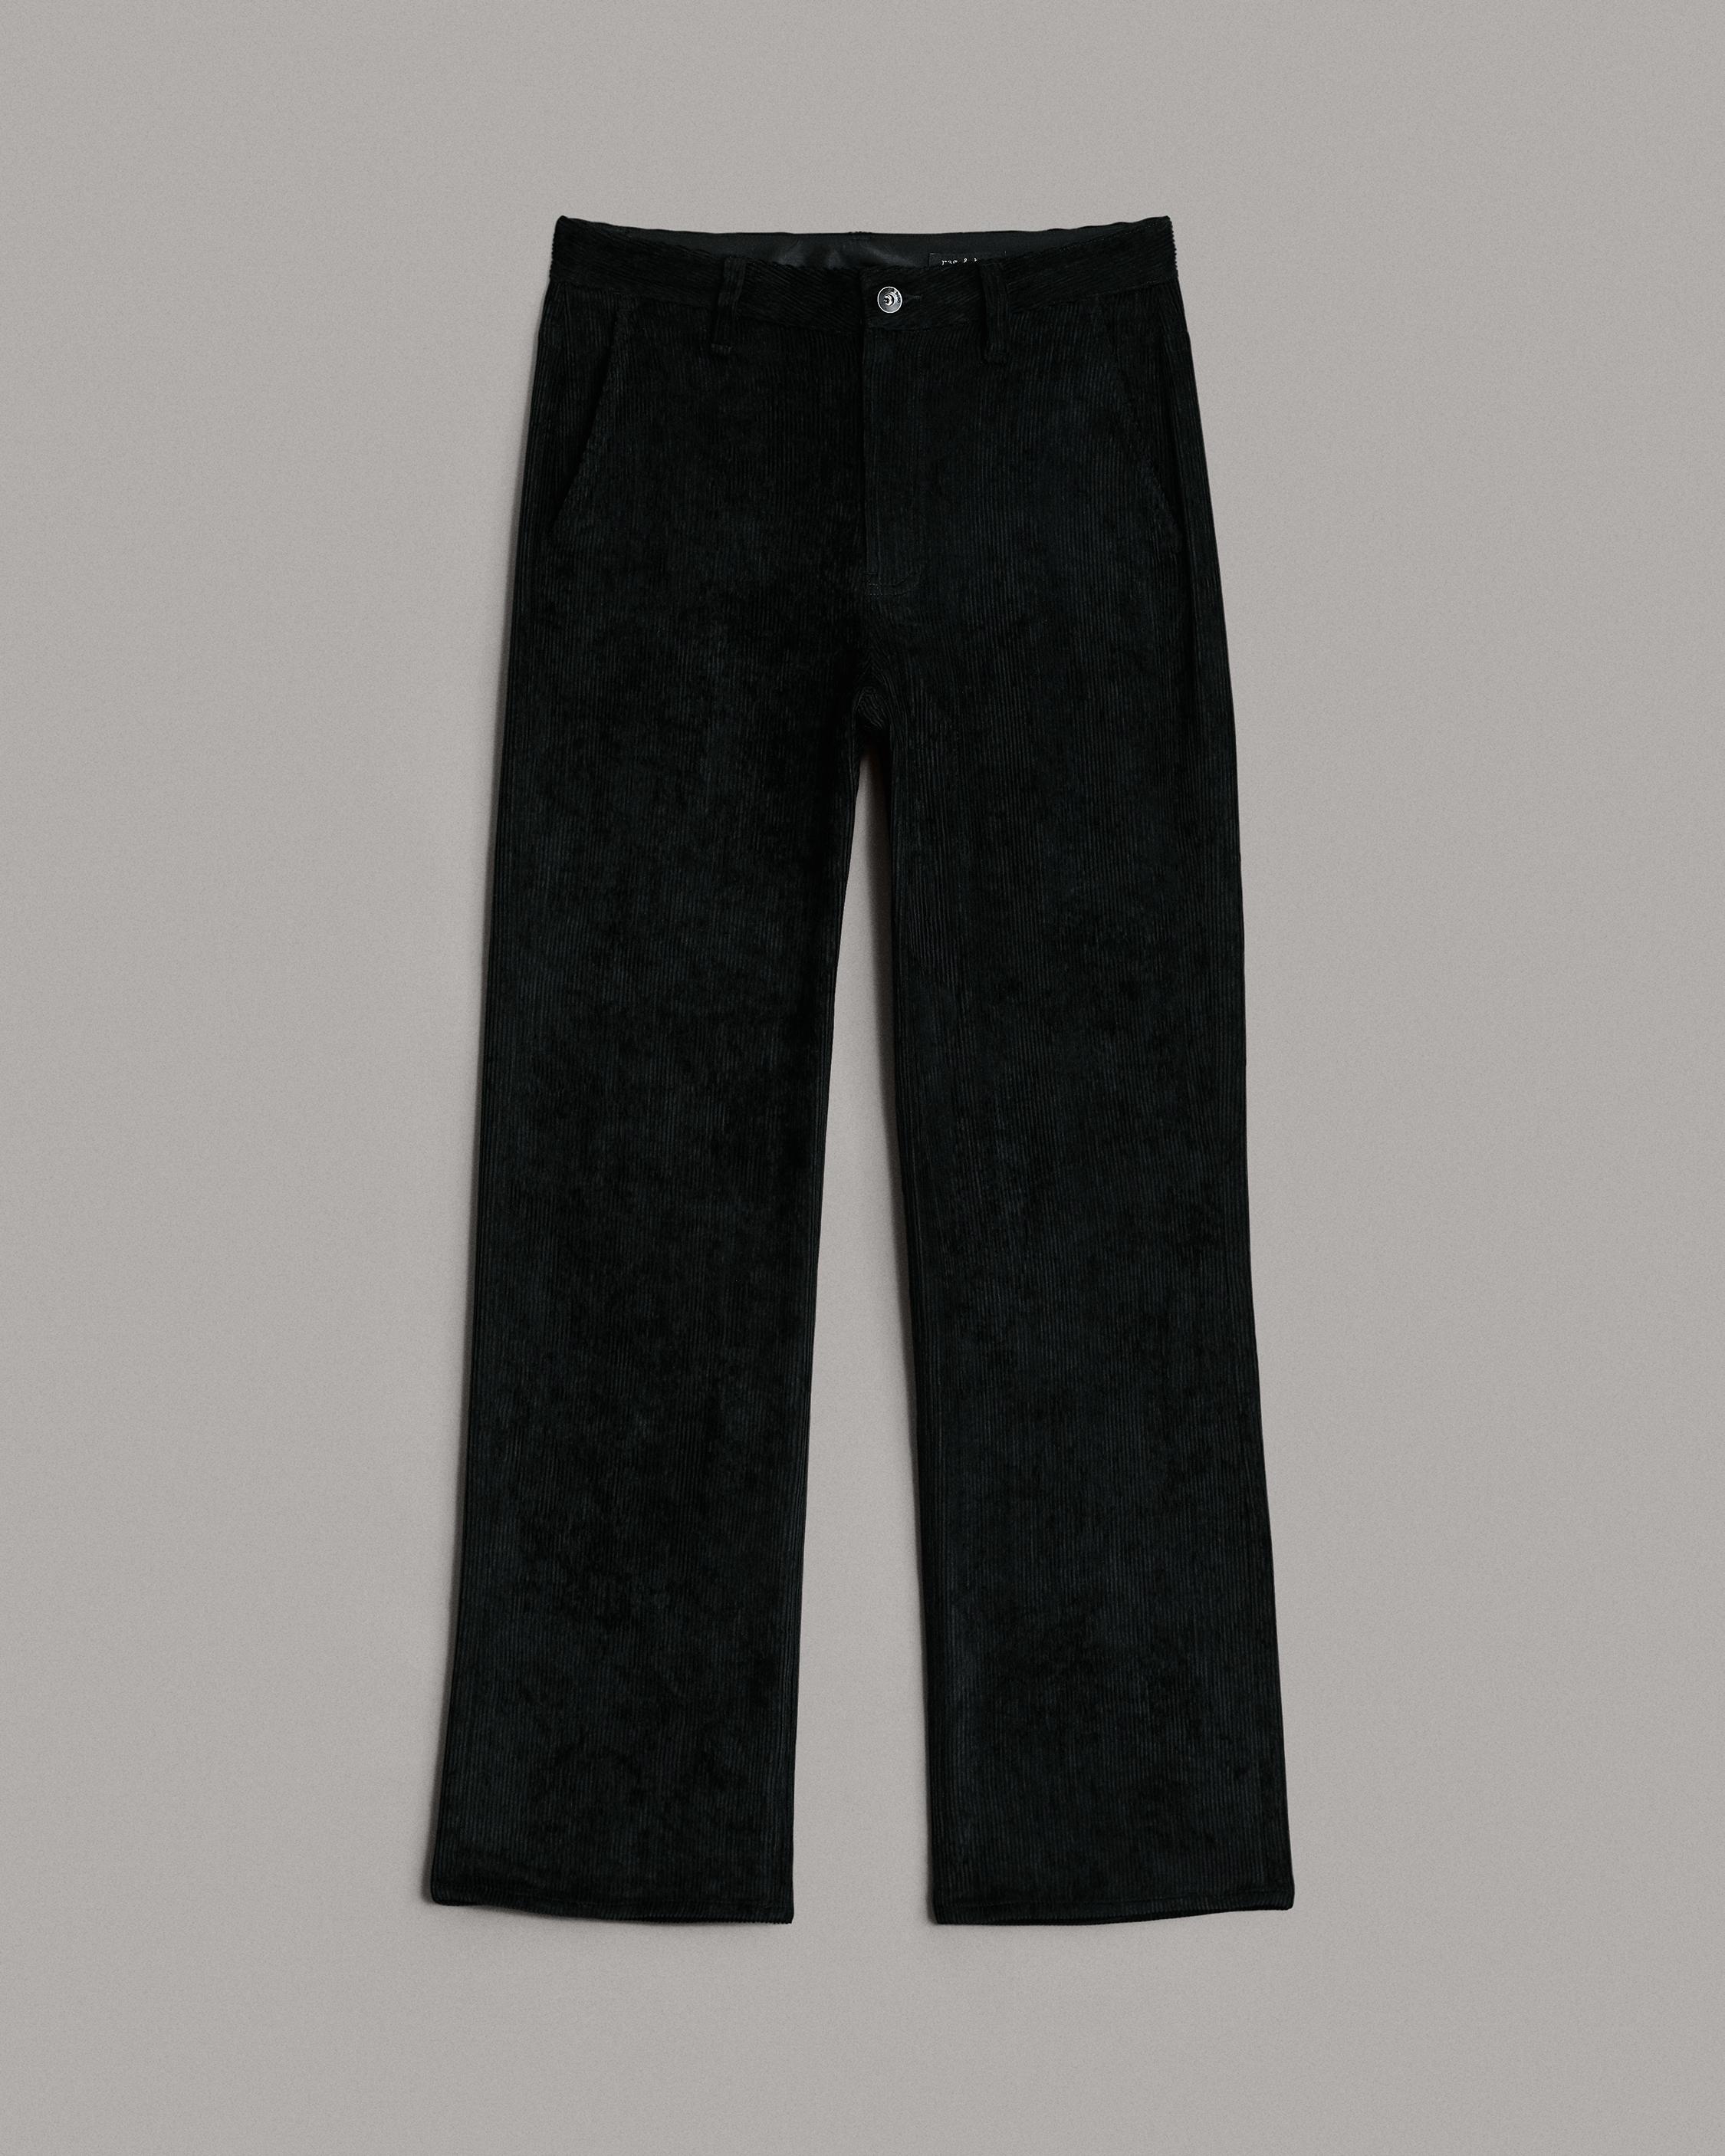 Shop Women's Pants in Various Styles & Lengths | rag & bone